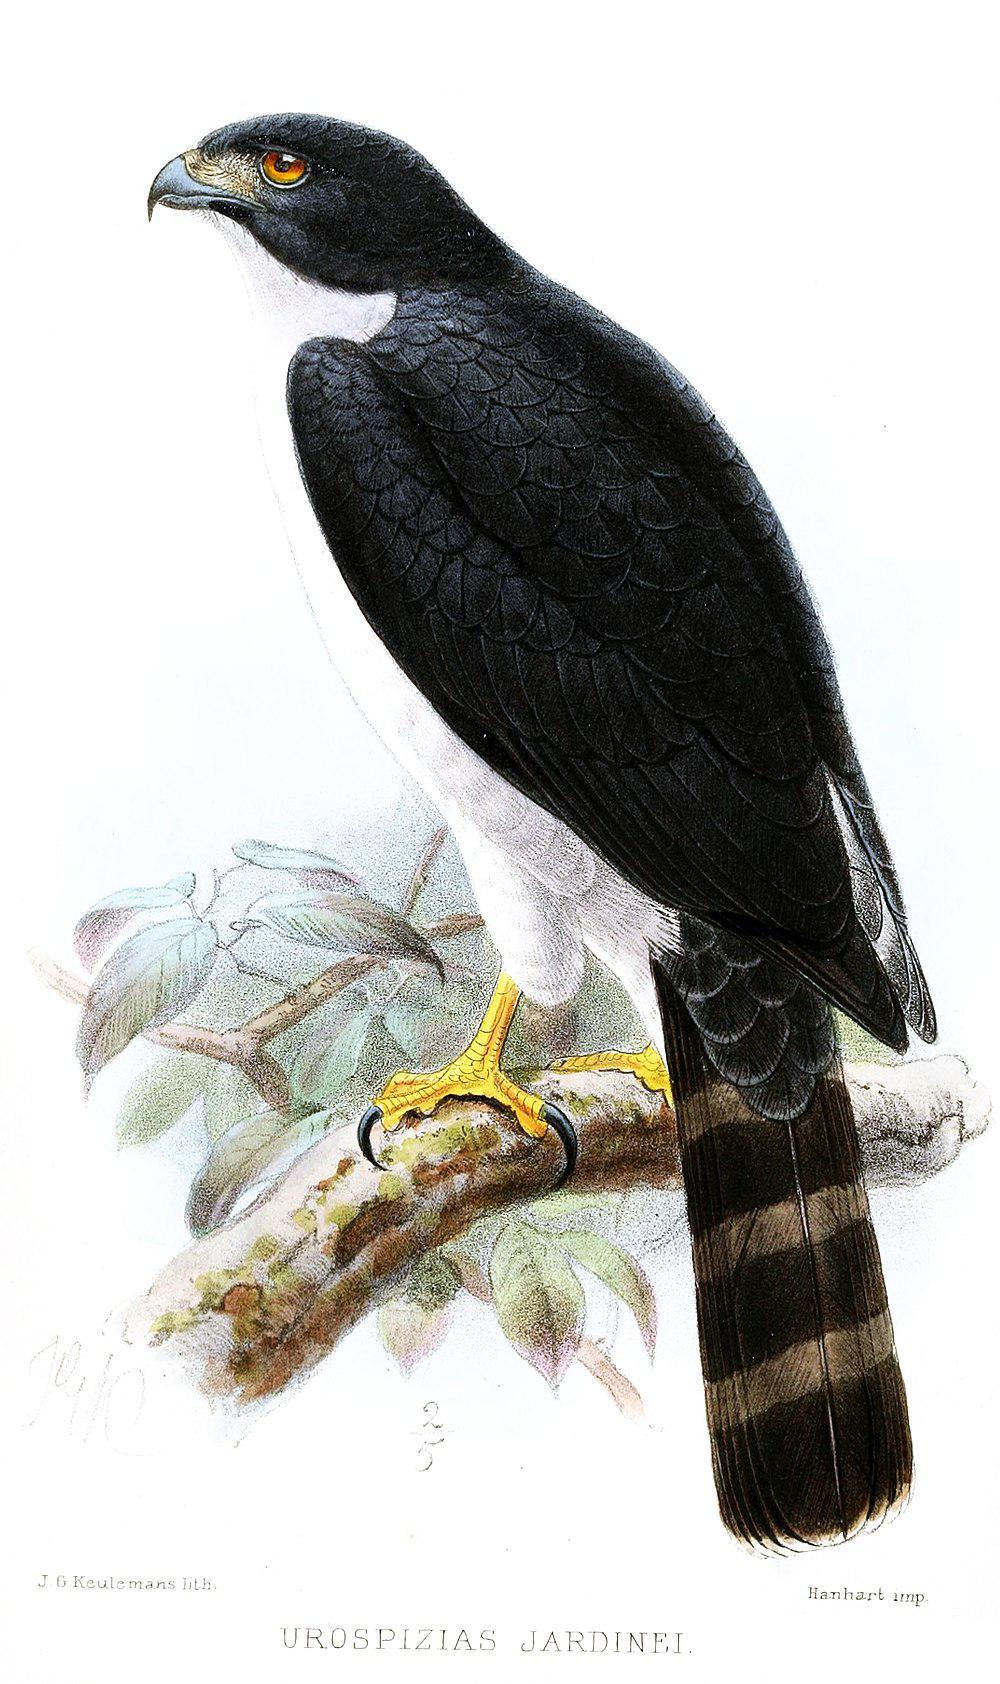 灰腹鹰 / Grey-bellied Hawk / Accipiter poliogaster